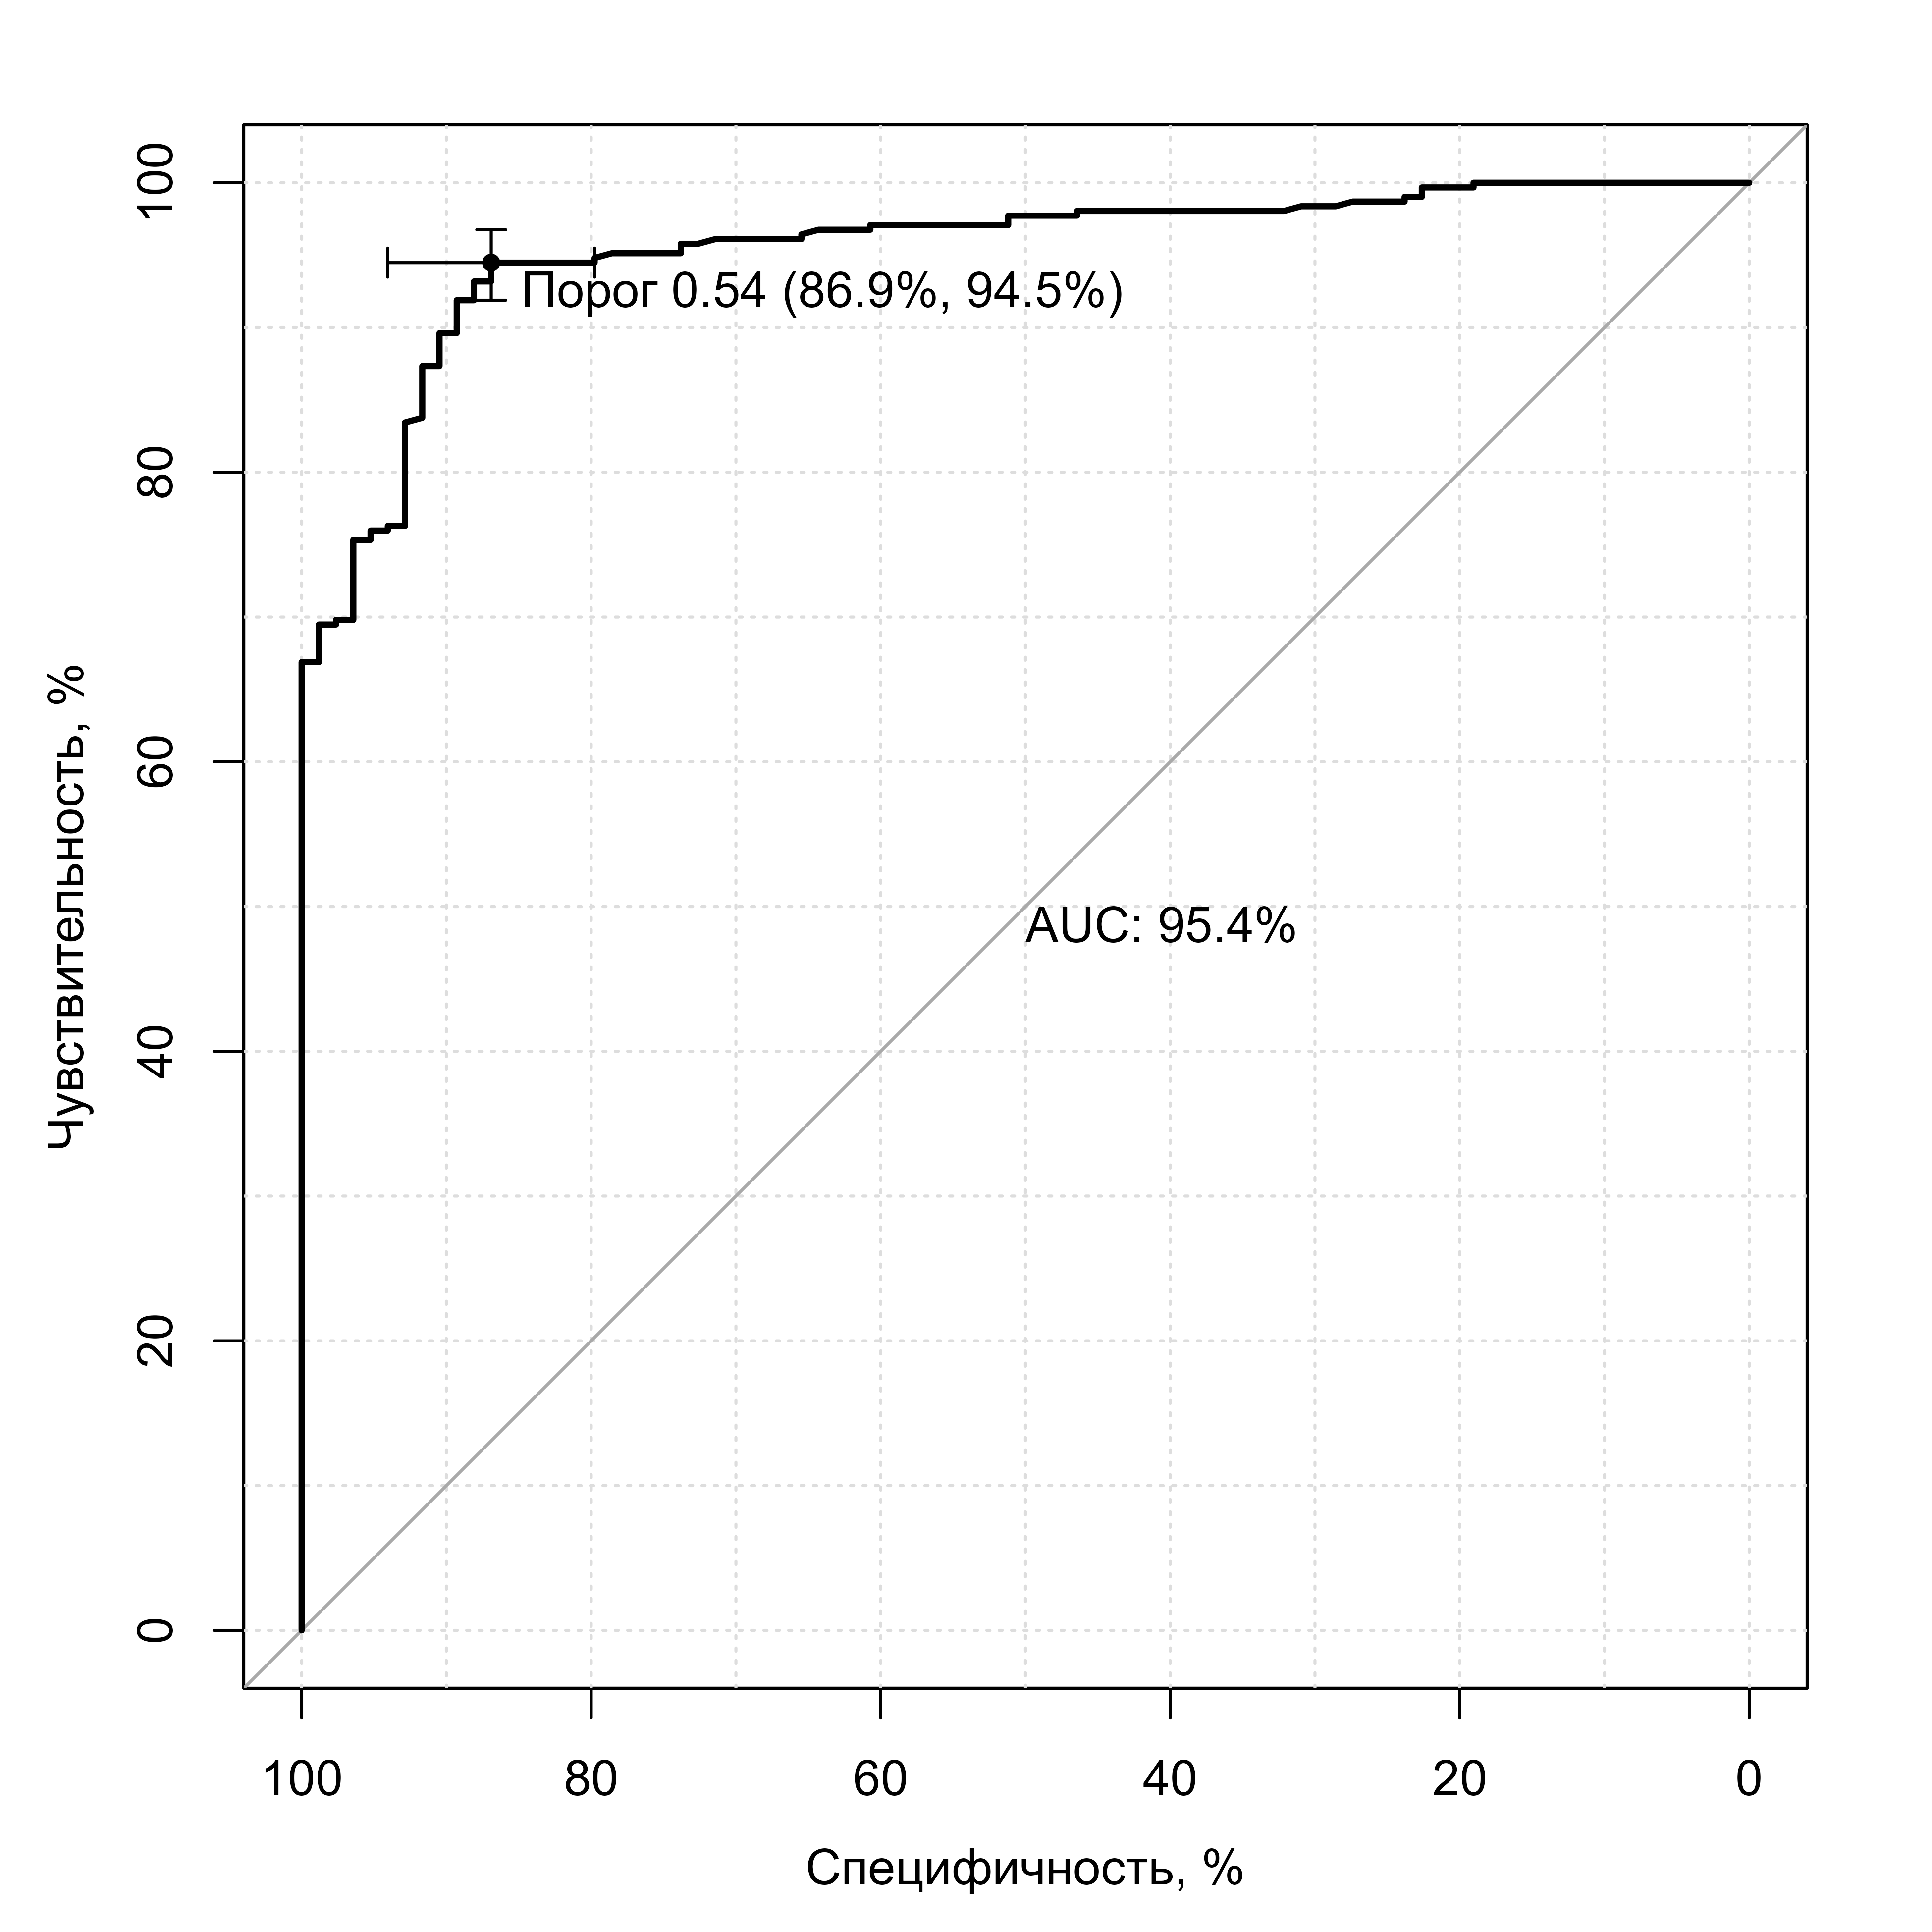 ROC-кривая для многофакторной модели (n=392)